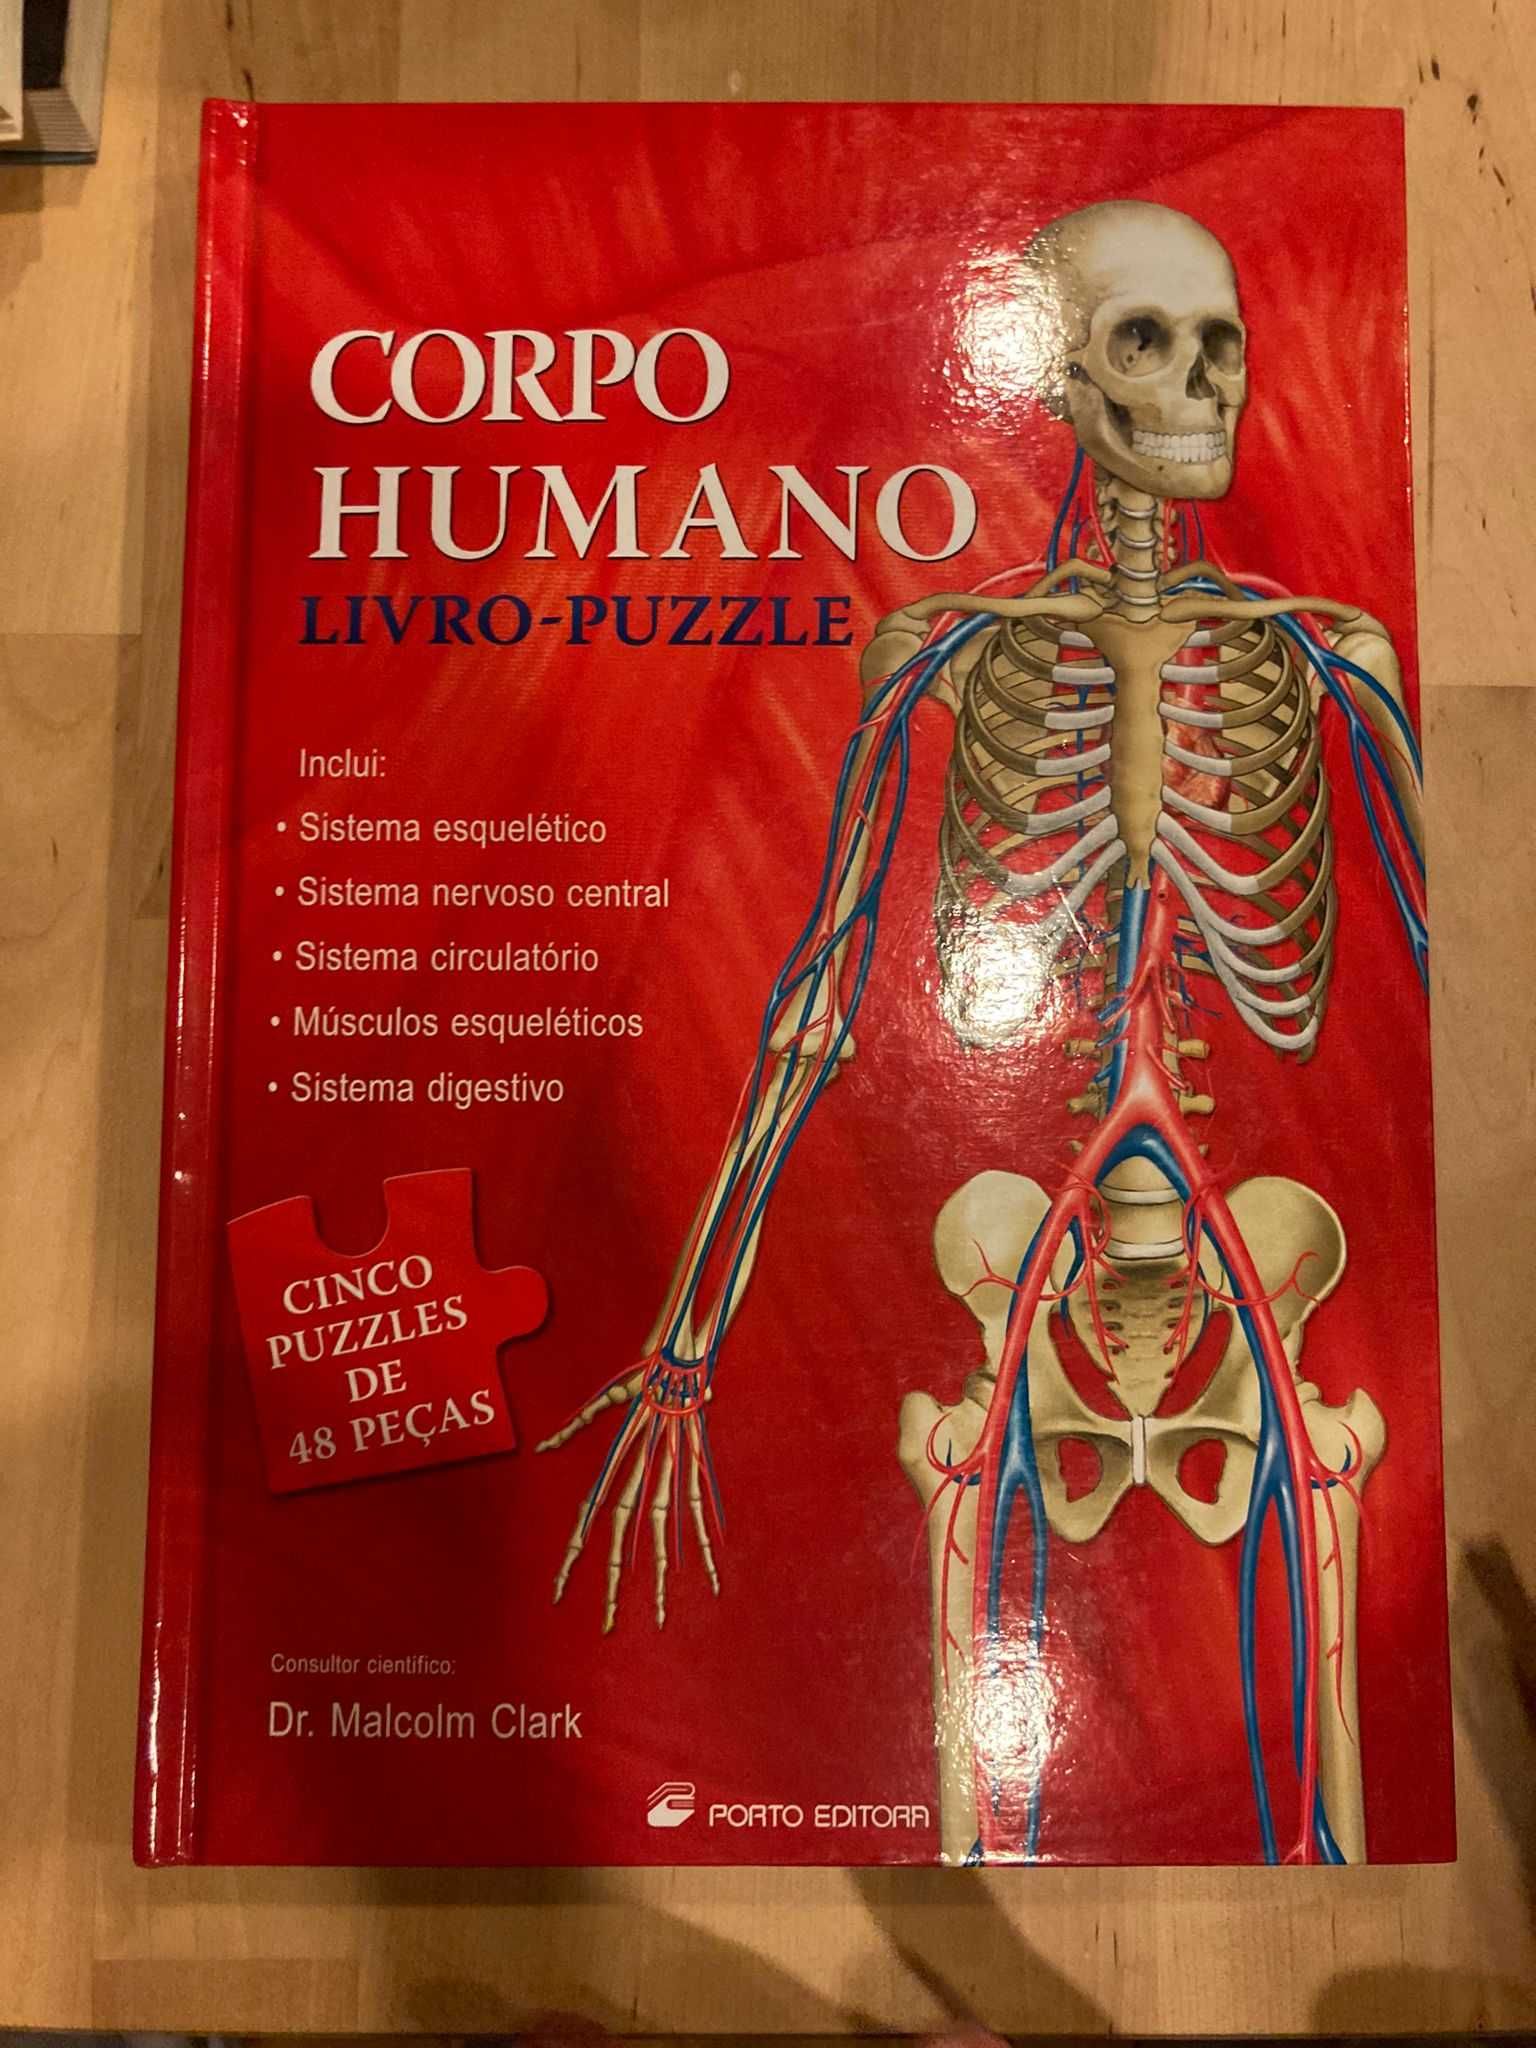 Livro puzzle anatomia corpo humano contem varios puzzles por abrirl.